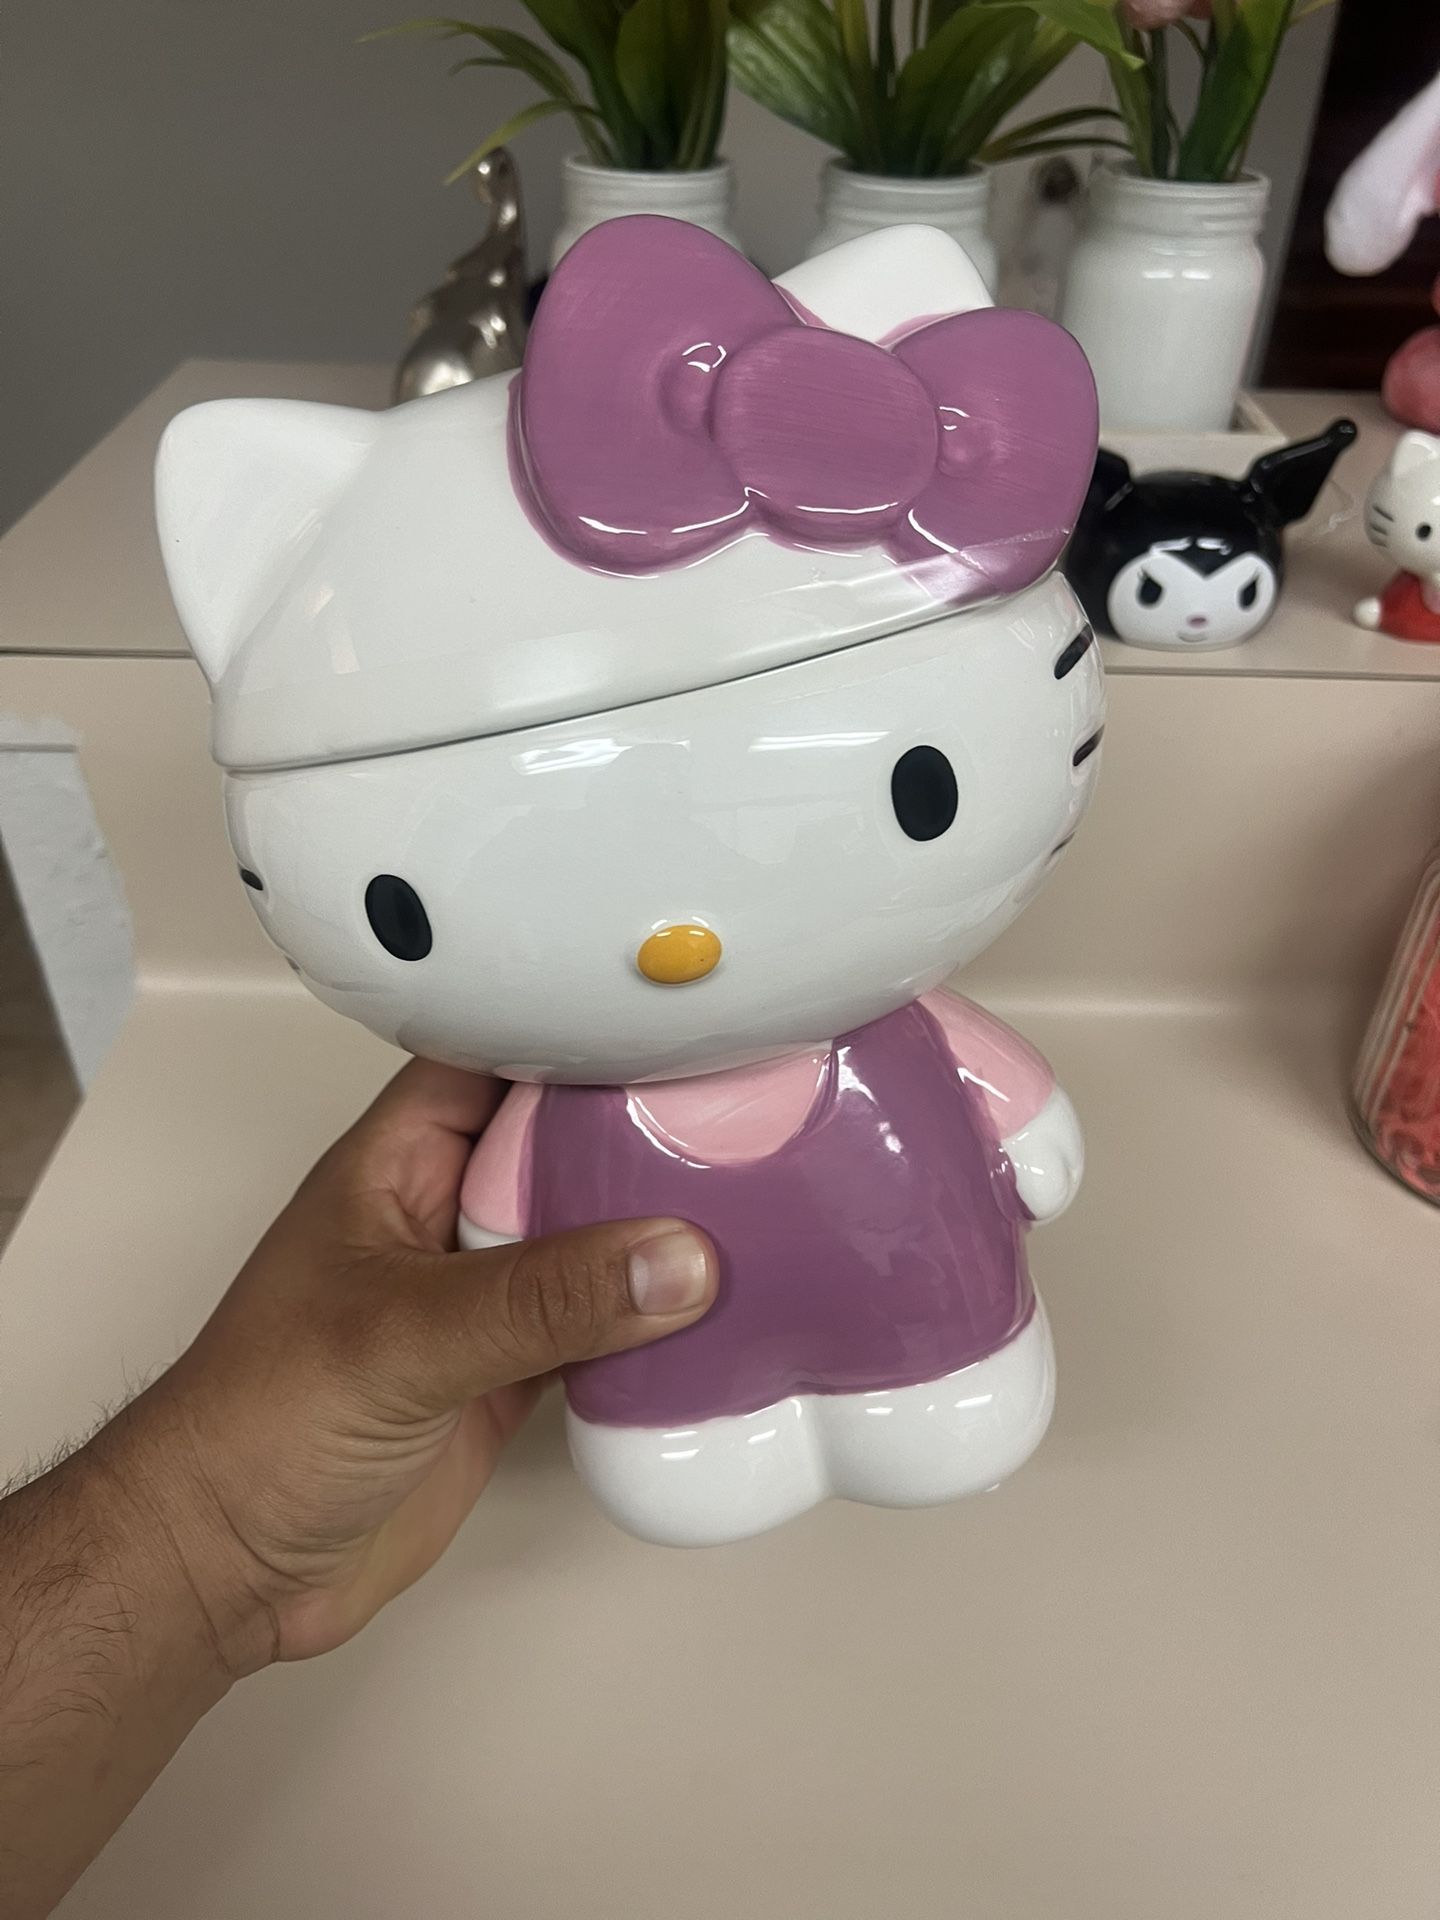 Hello Kitty Cookie Jar 